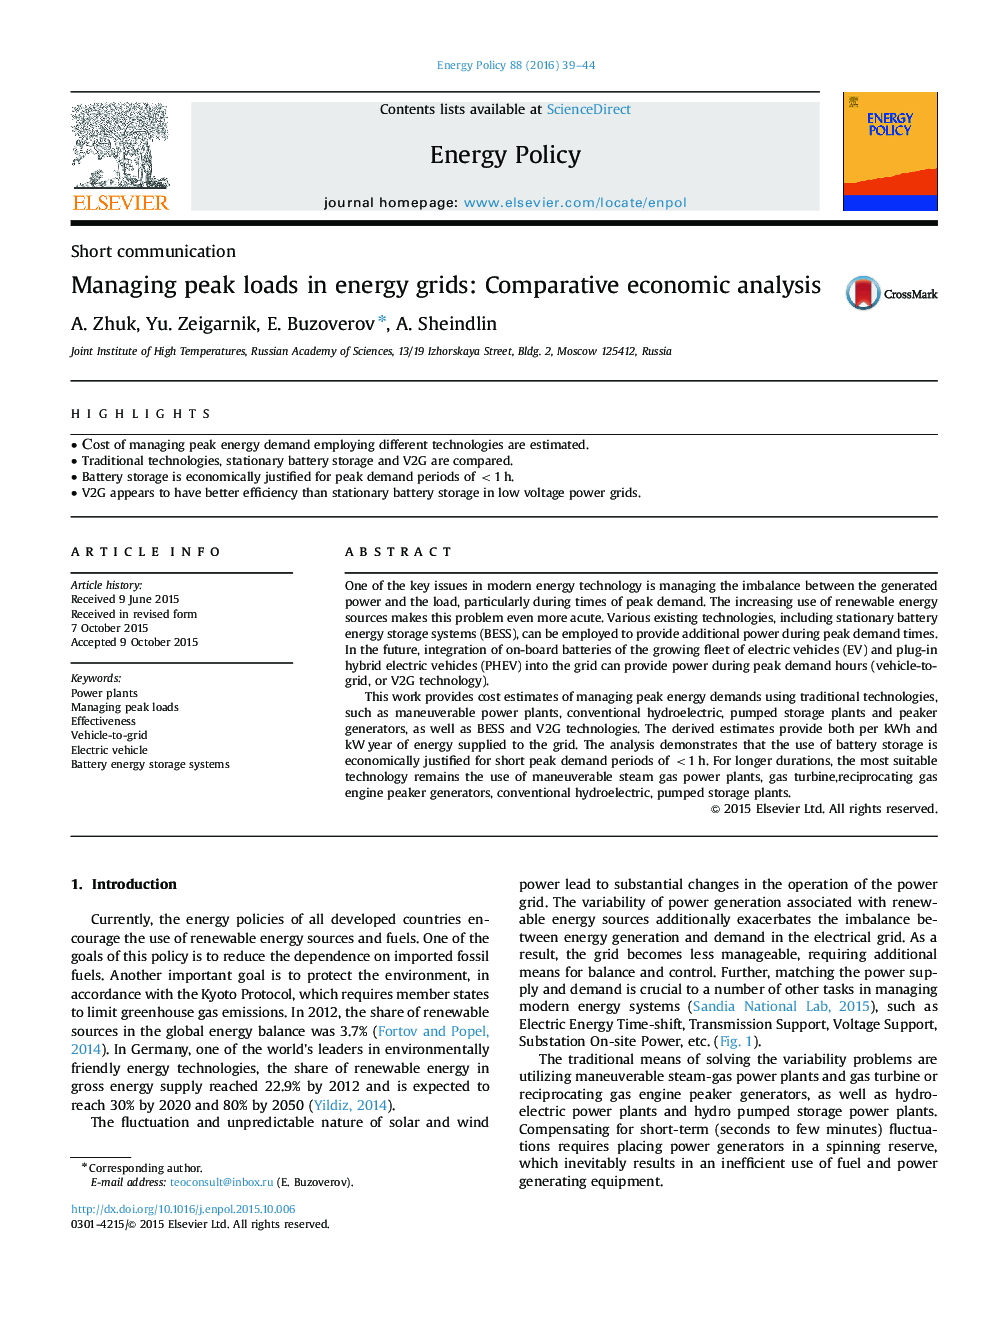 مدیریت بارهای پیک در شبکه های انرژی: تجزیه و تحلیل اقتصادی مقایسه ای 